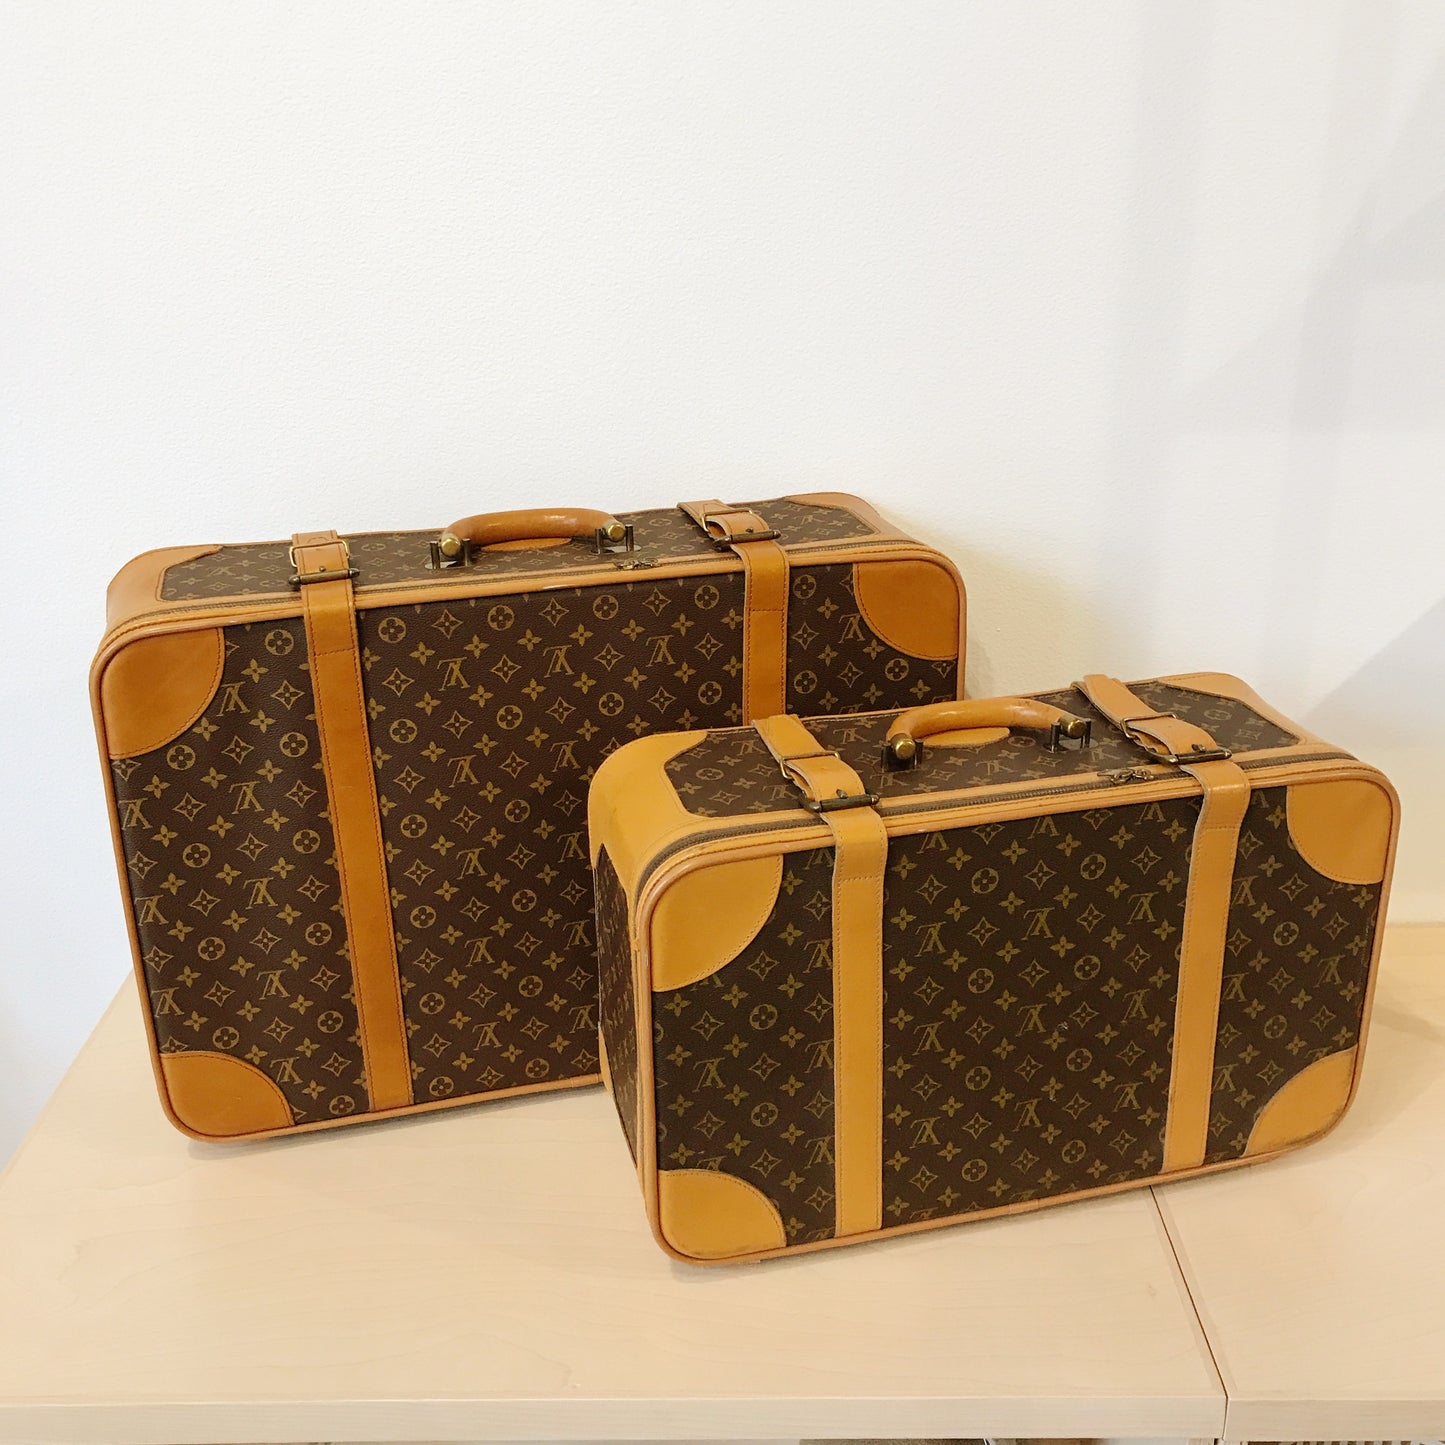 Authentic 1970s Vintage Louis Vuitton Suitcases (set